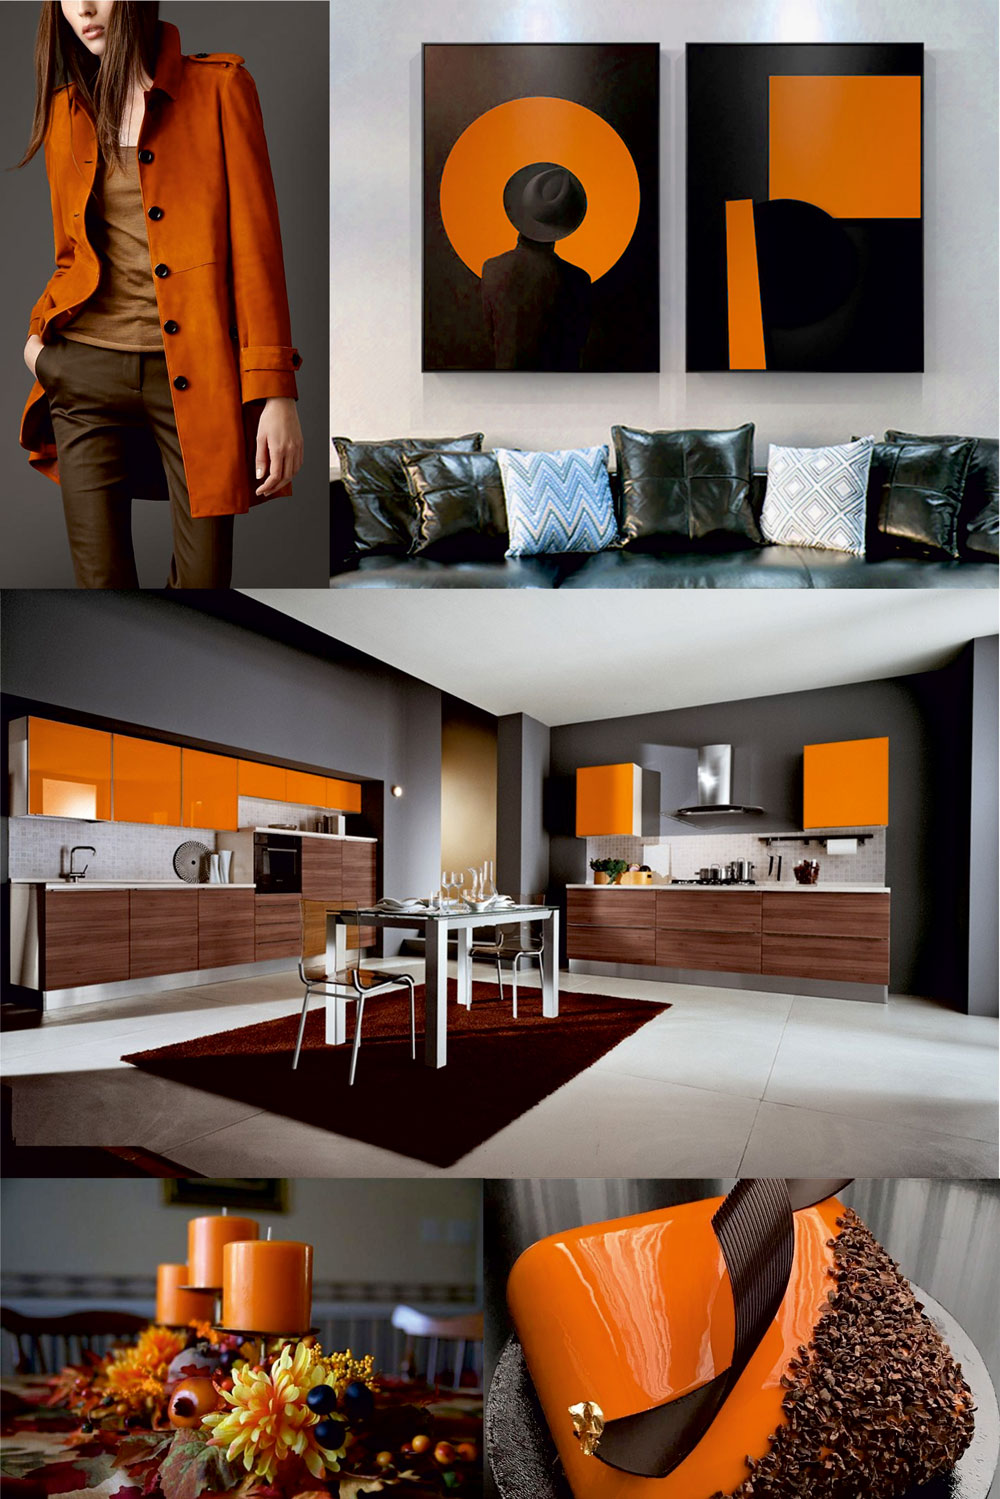 Фирменный стиль мебельной компании Памир. Использование фирменного цветового сочетания